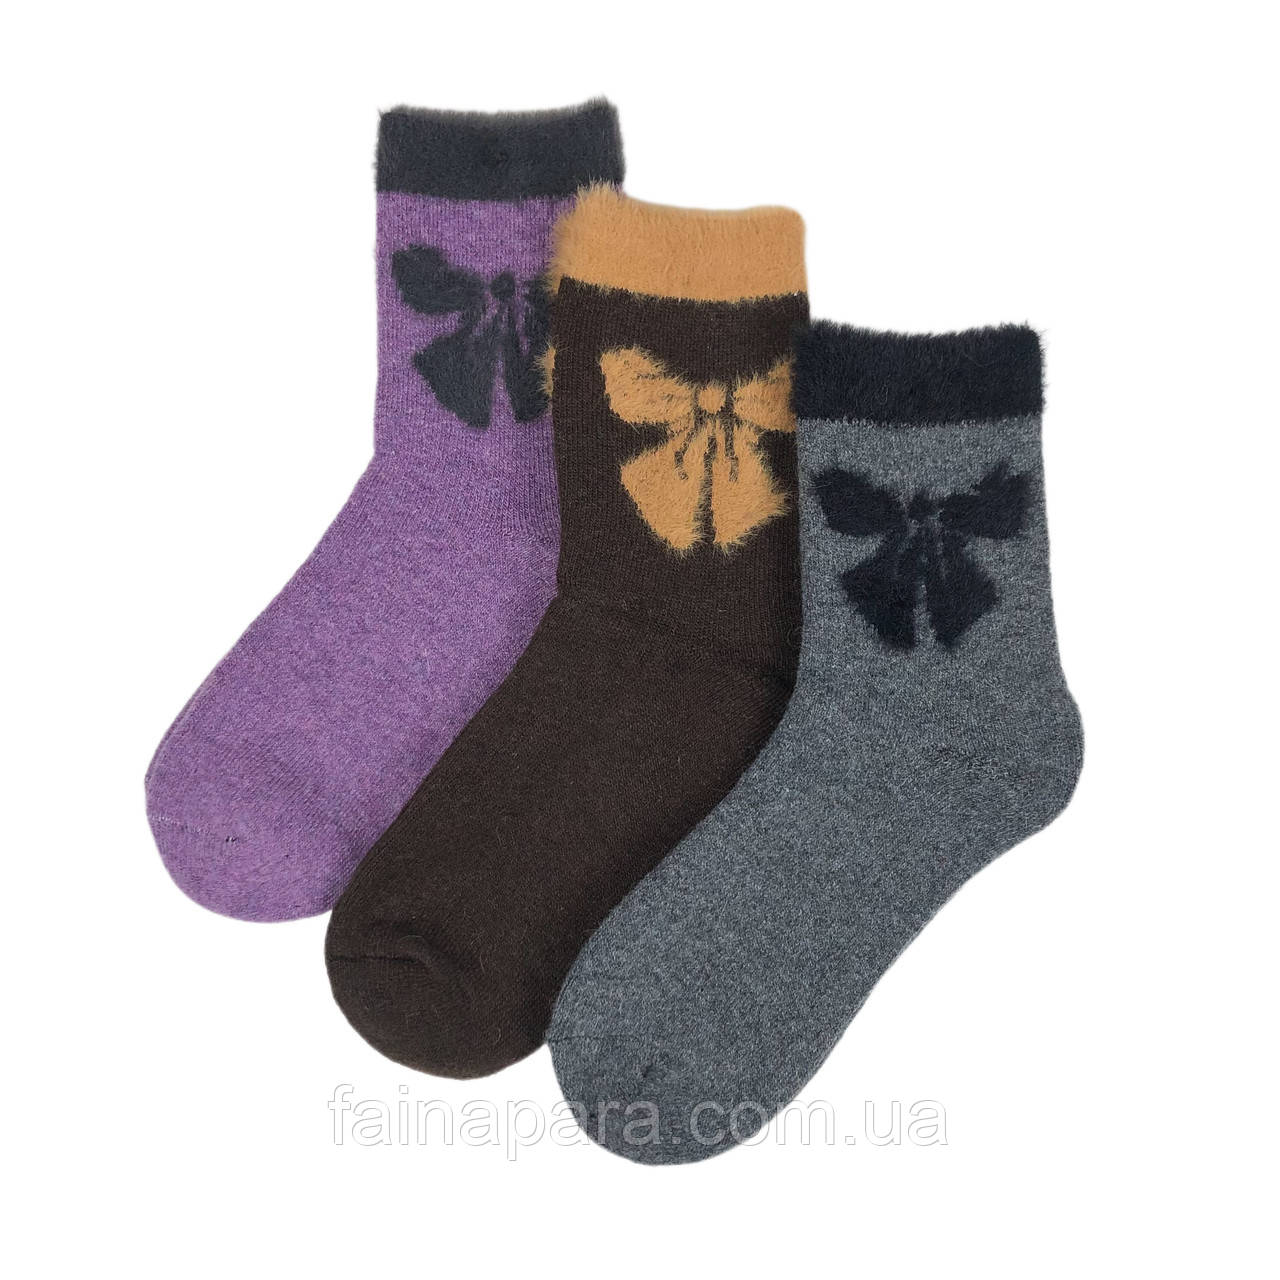 Жіночі ангорові махрові шкарпетки (бант)